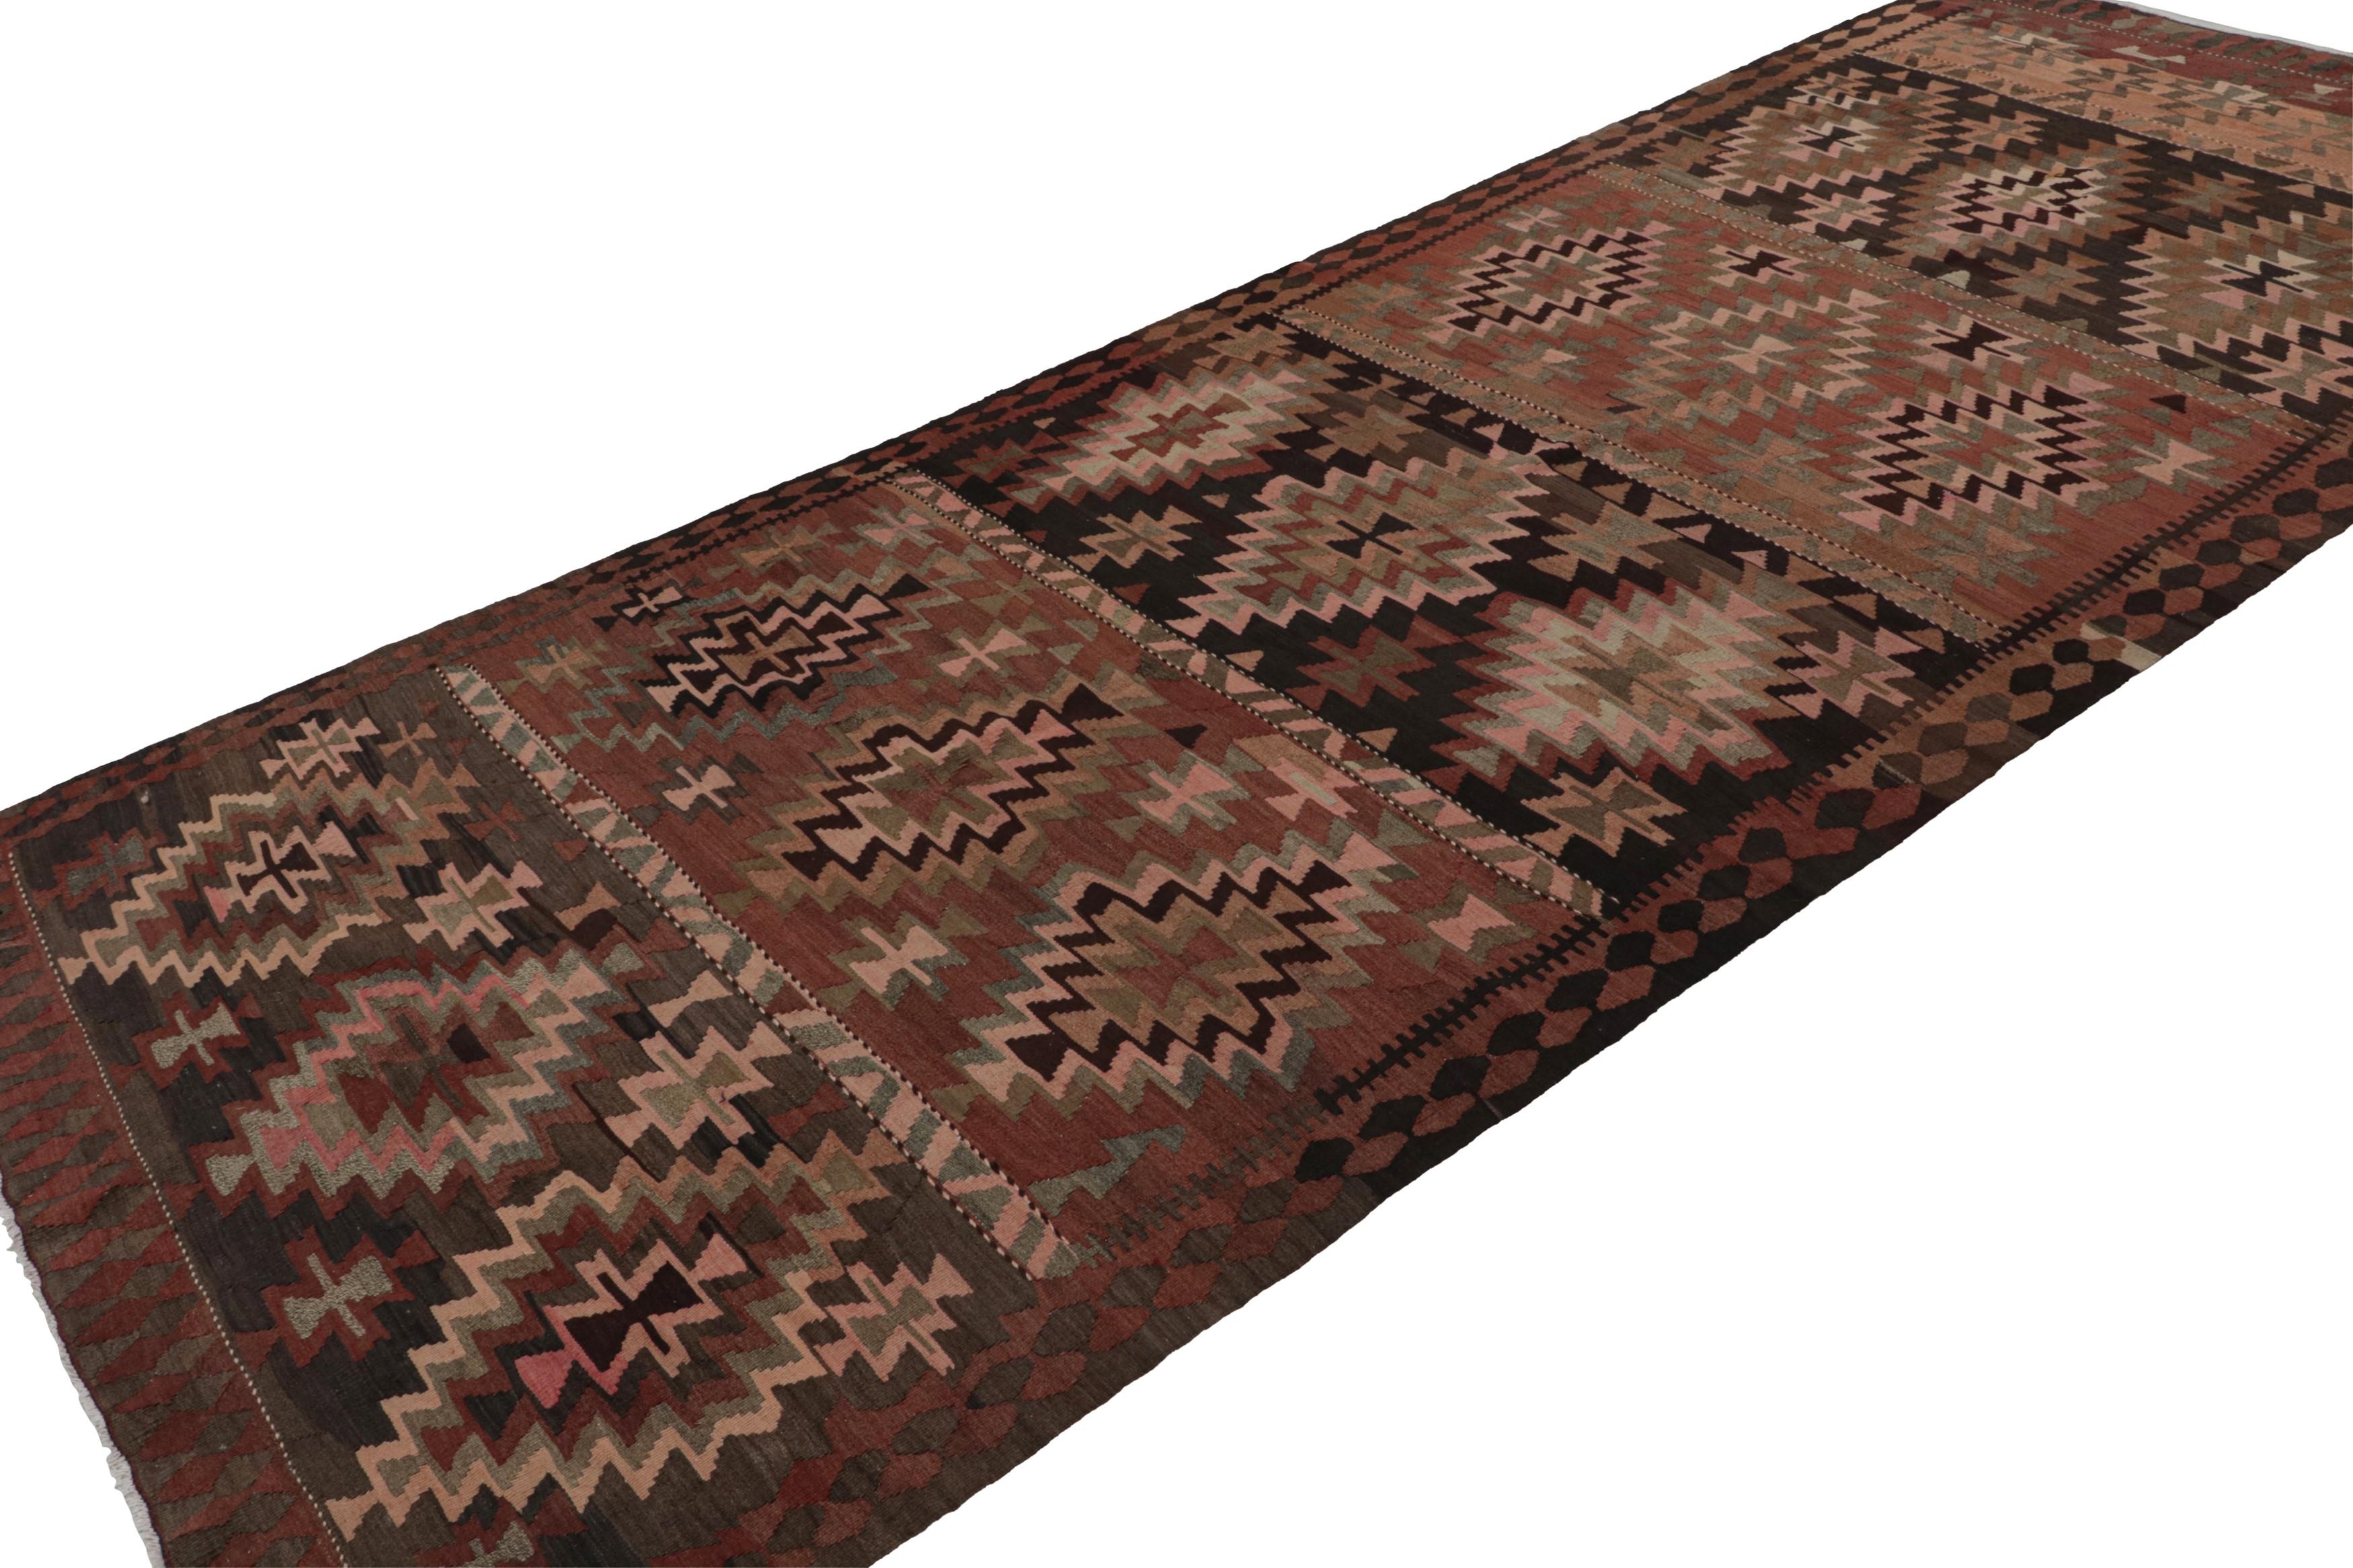 Dieser 6x14 große afghanische Stammes-Kelim und Galerie-Läufer aus Wolle, handgewebt um 1950-1960, zeichnet sich durch eine minimale Farbpalette aus satten Braun- und Rosatönen und leuchtenden Rost- und Grünakzenten aus. 

Über das Design: 

Kenner